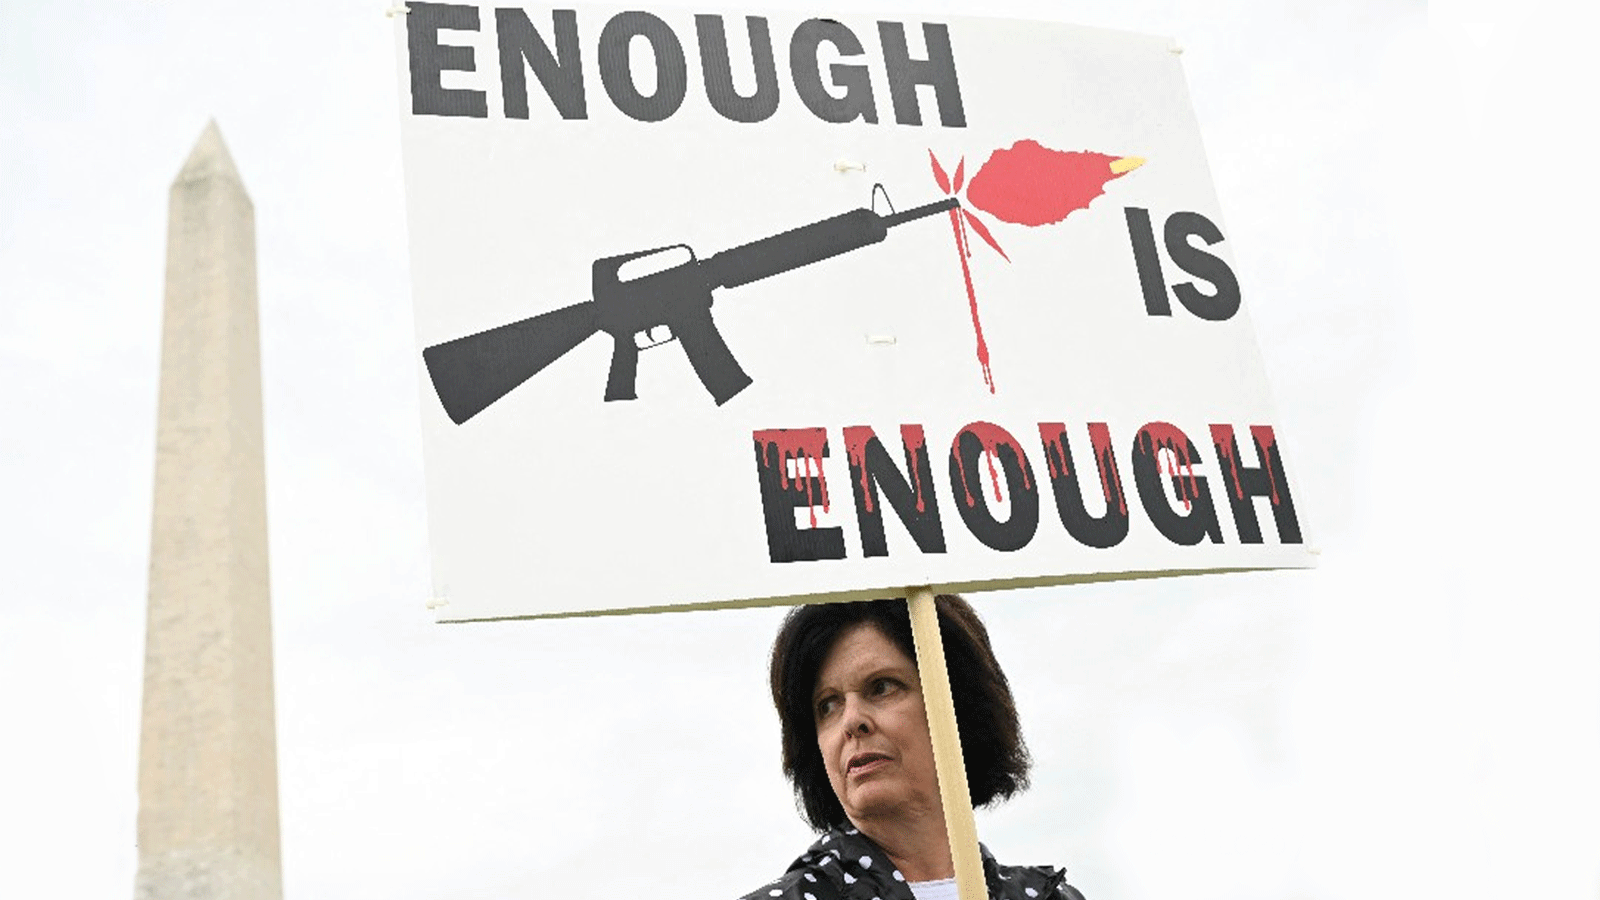 المتظاهرون يحملون اللافتات ضد حمل السلاح عقب المجازر التي وقعت مؤخراً في عدة ولايات أميركية